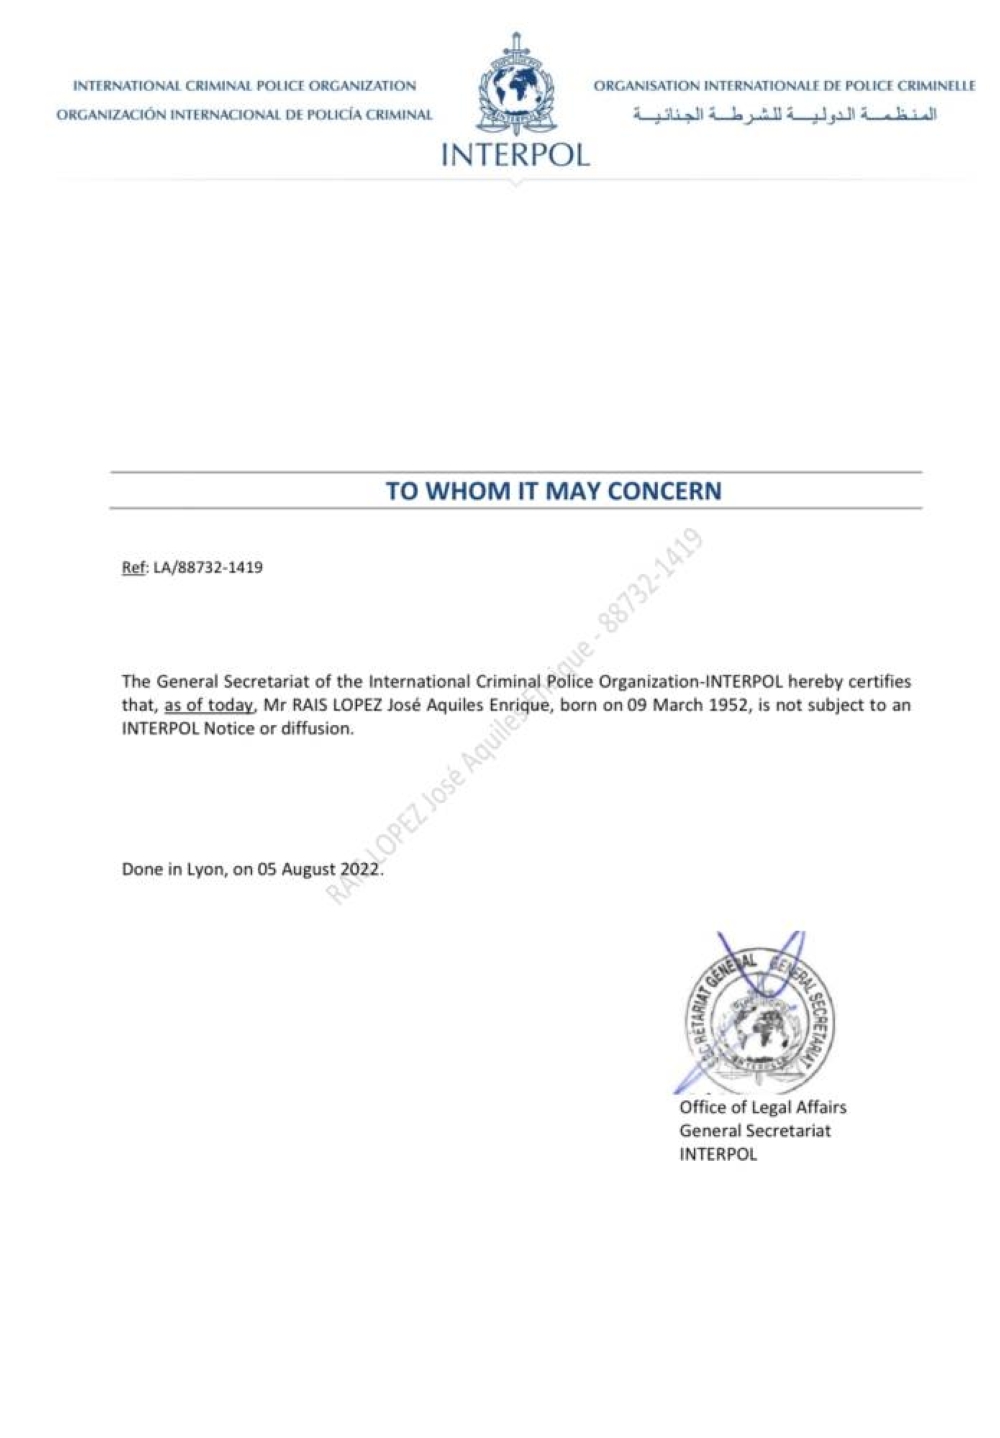 Una carta de Interpol certifica que Rais no tiene difusión roja.